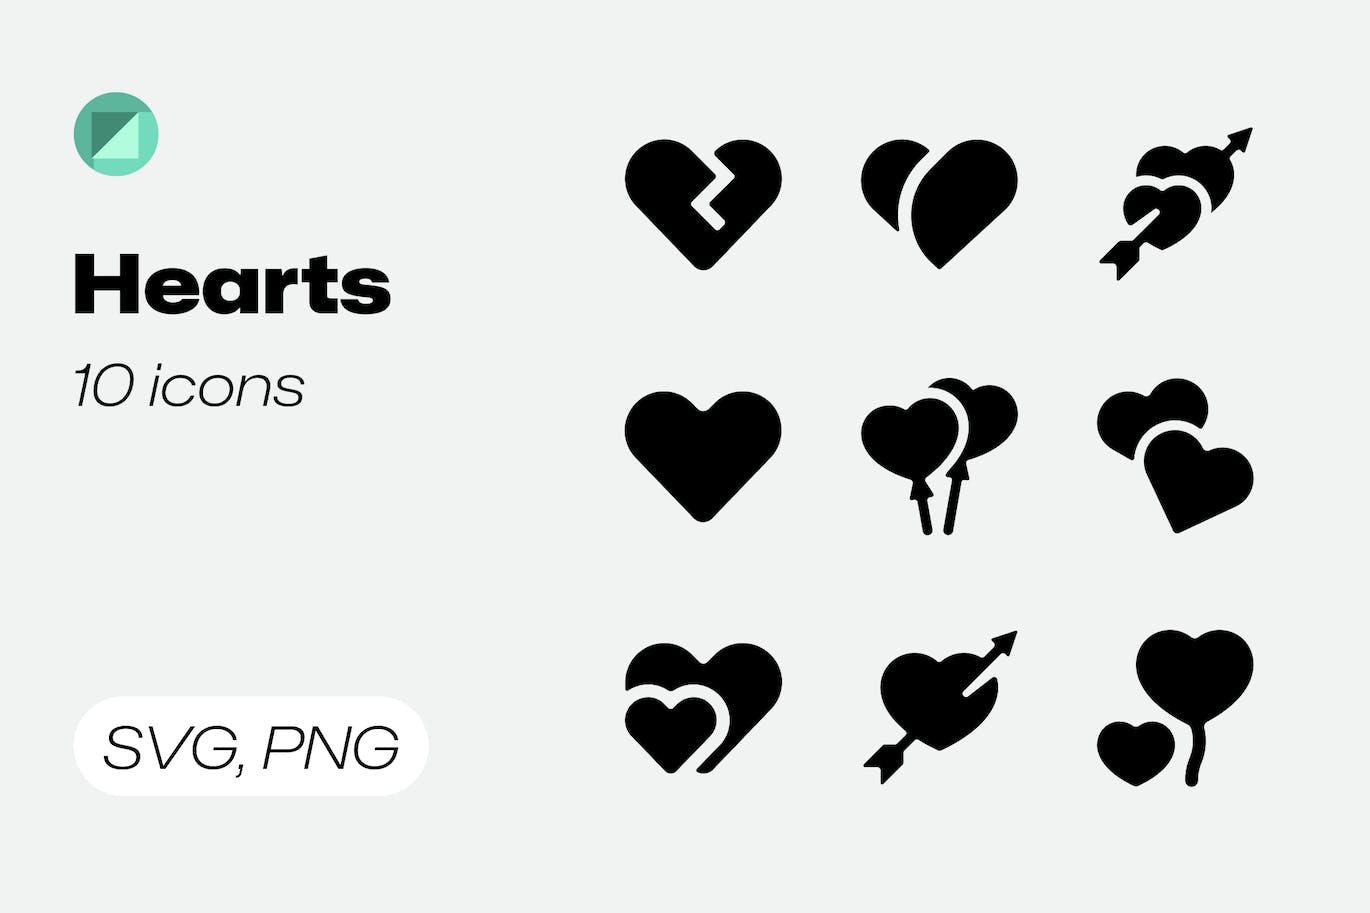 10个心形纯色图标 Basicons / Solid / Hearts Icons 图标素材 第1张